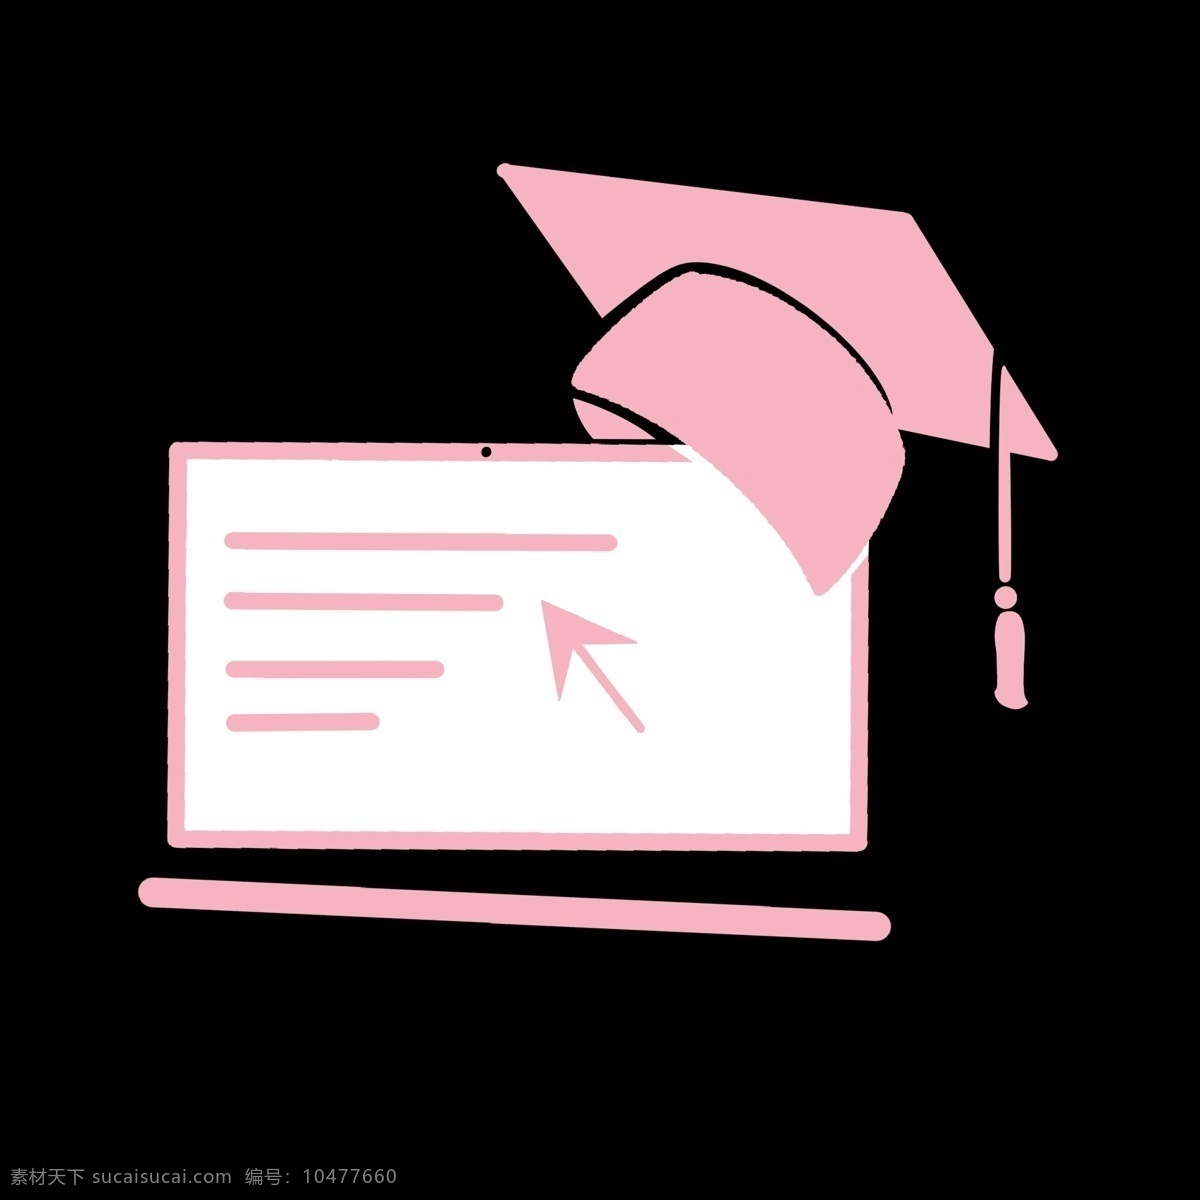 粉色 电脑 博士帽 简历 图标 电脑矢量图 学历 文化程度 知识水平 简洁 抽象 卡通 ppt使用 名片使用 简历表专用